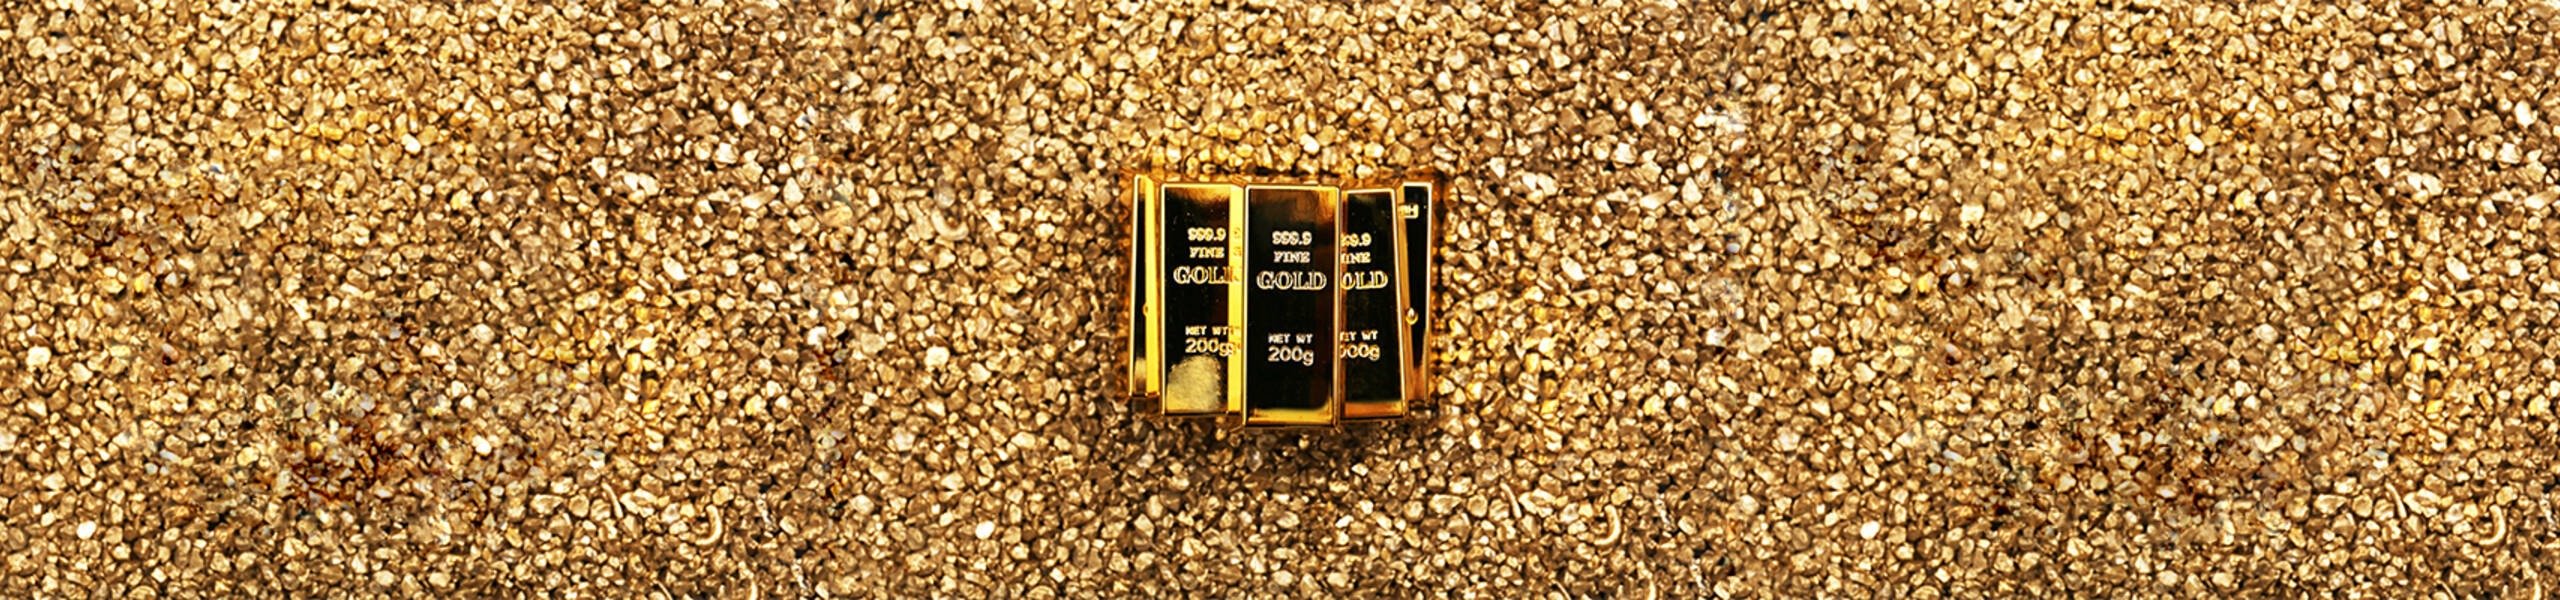 GOLD: Giai đoạn điều chỉnh của GOLD đã kết thúc và tăng tiếp diễn